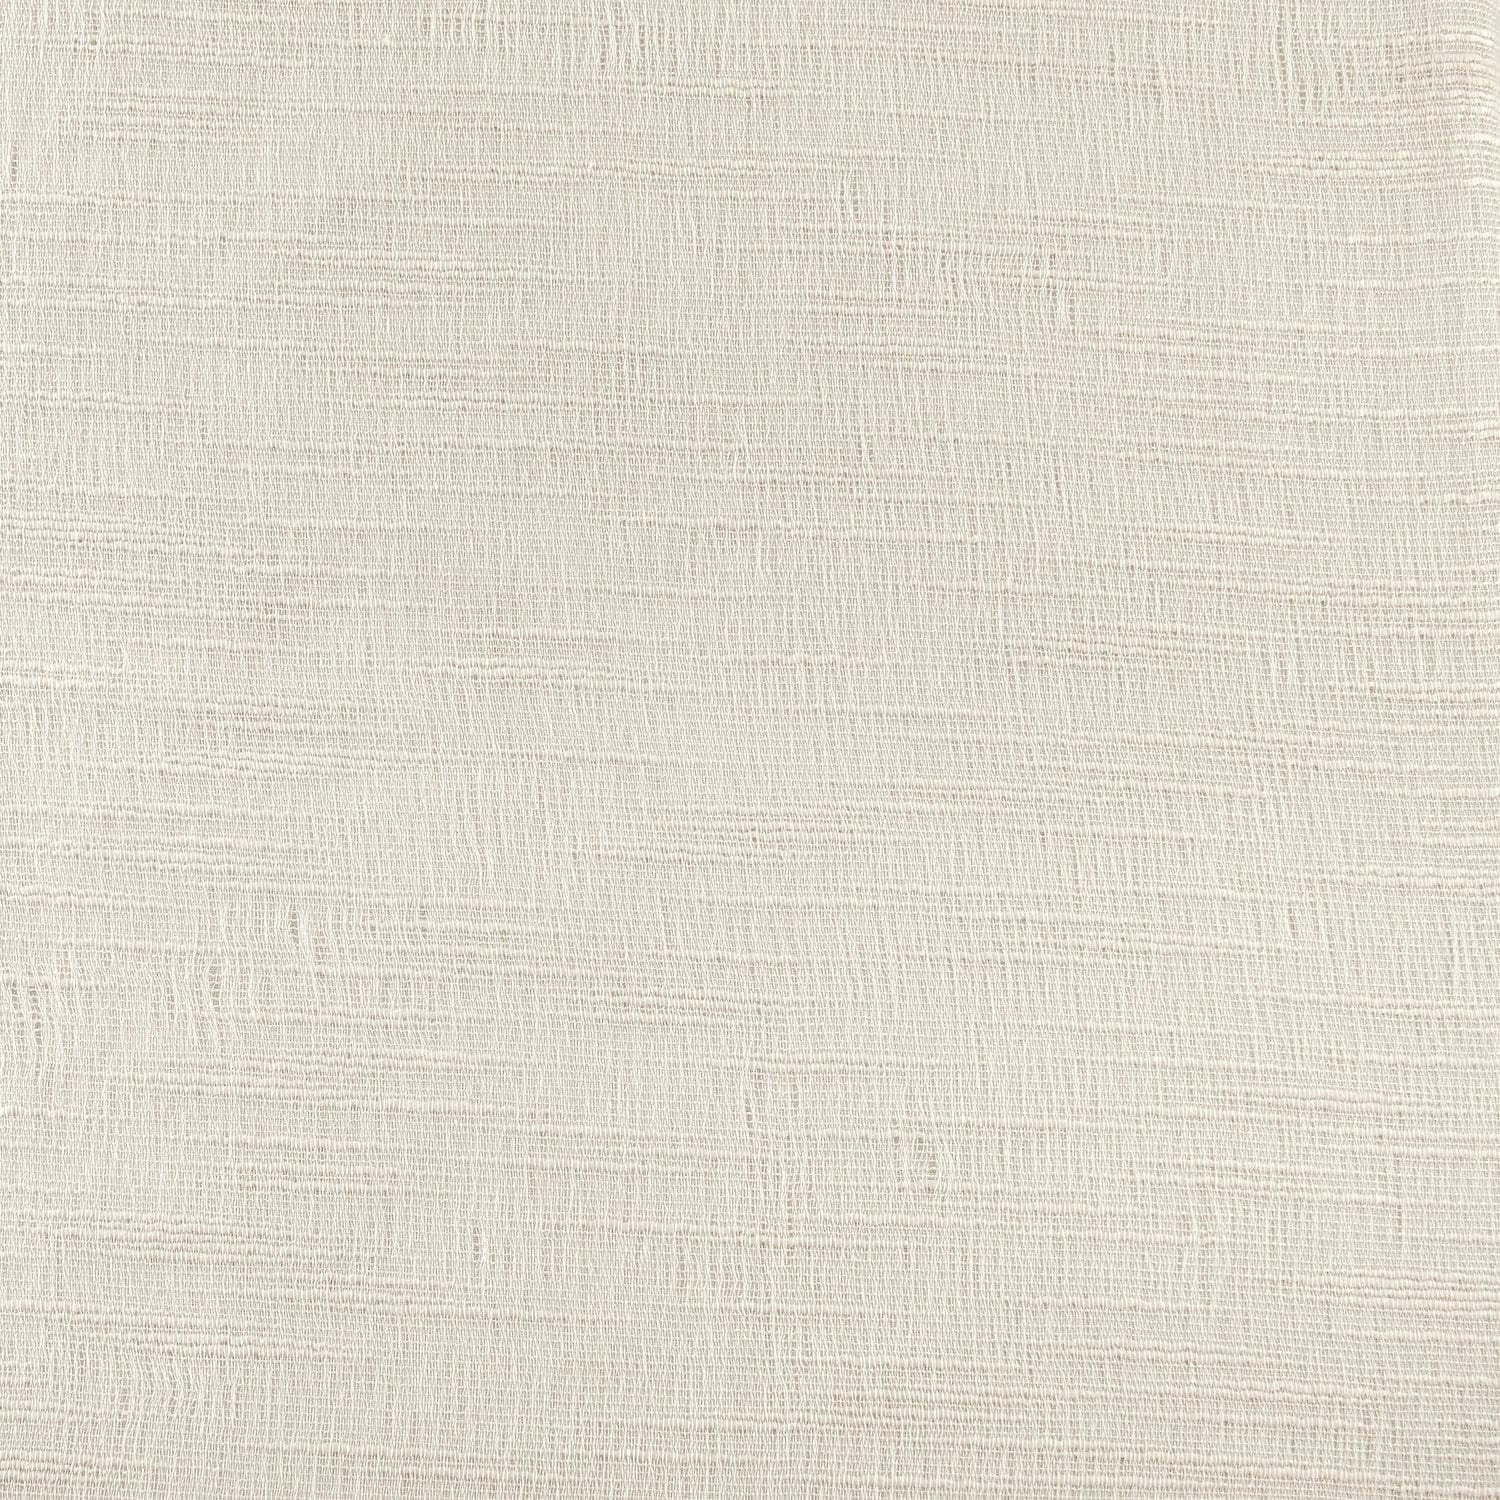 Ivory Open Weave Linen Blend Sheer Curtain